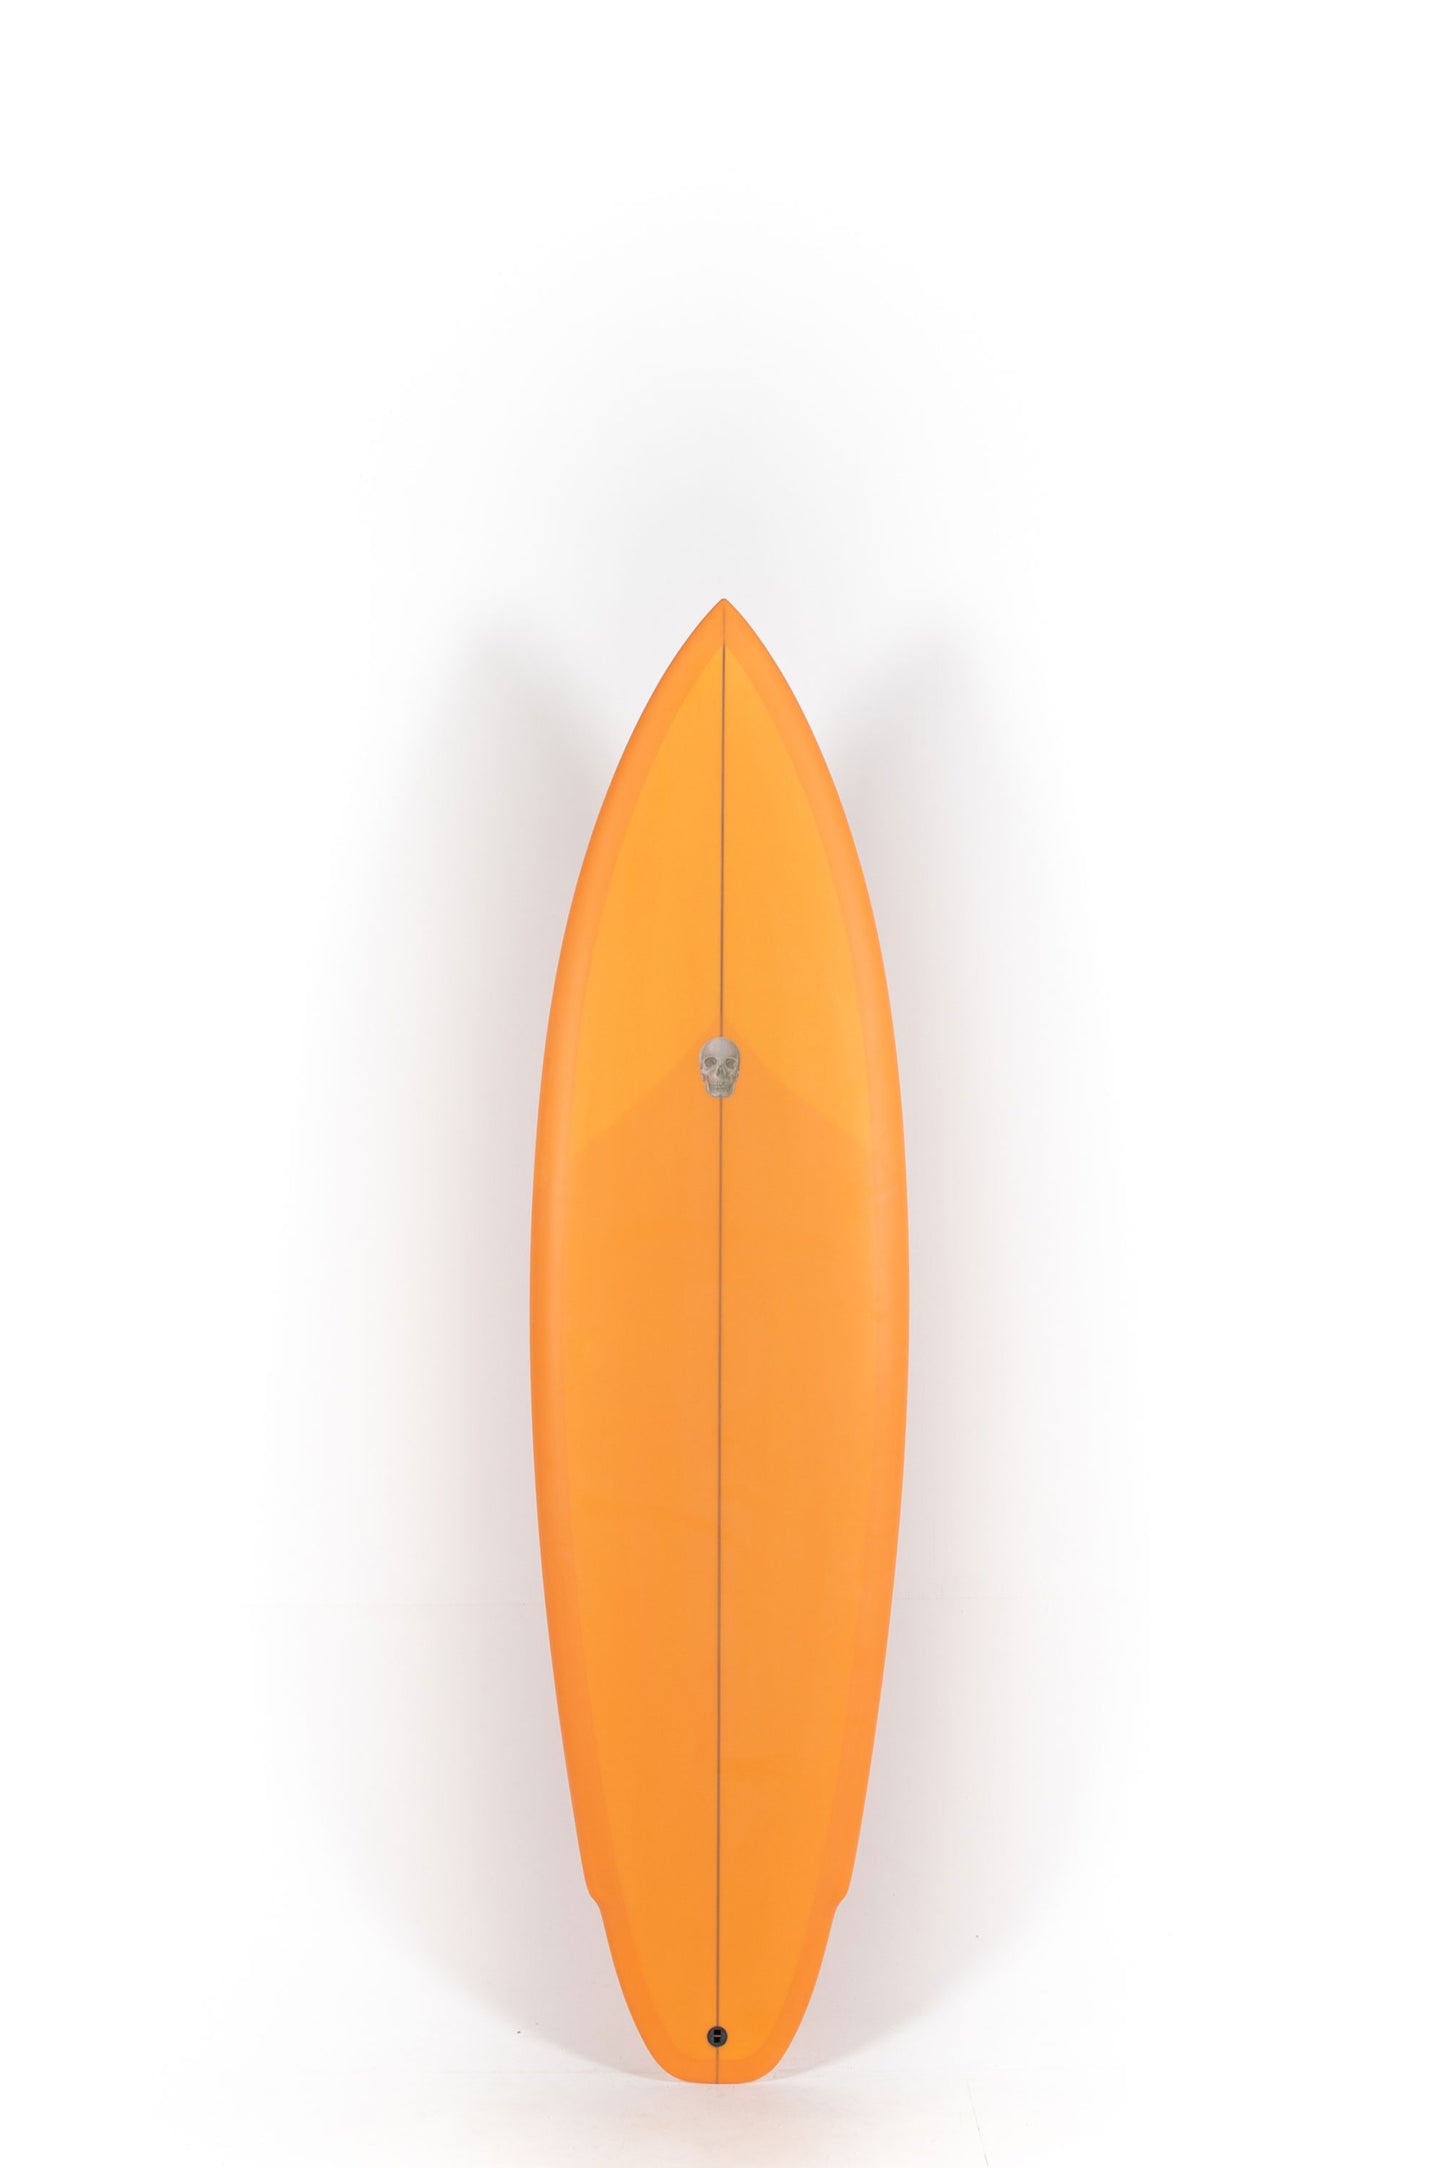 Pukas Sur Shop - Christenson Surfboards - LANE SPLITTER MID- 6'8" x 20 7/8 x 2 1/2 - CX04025